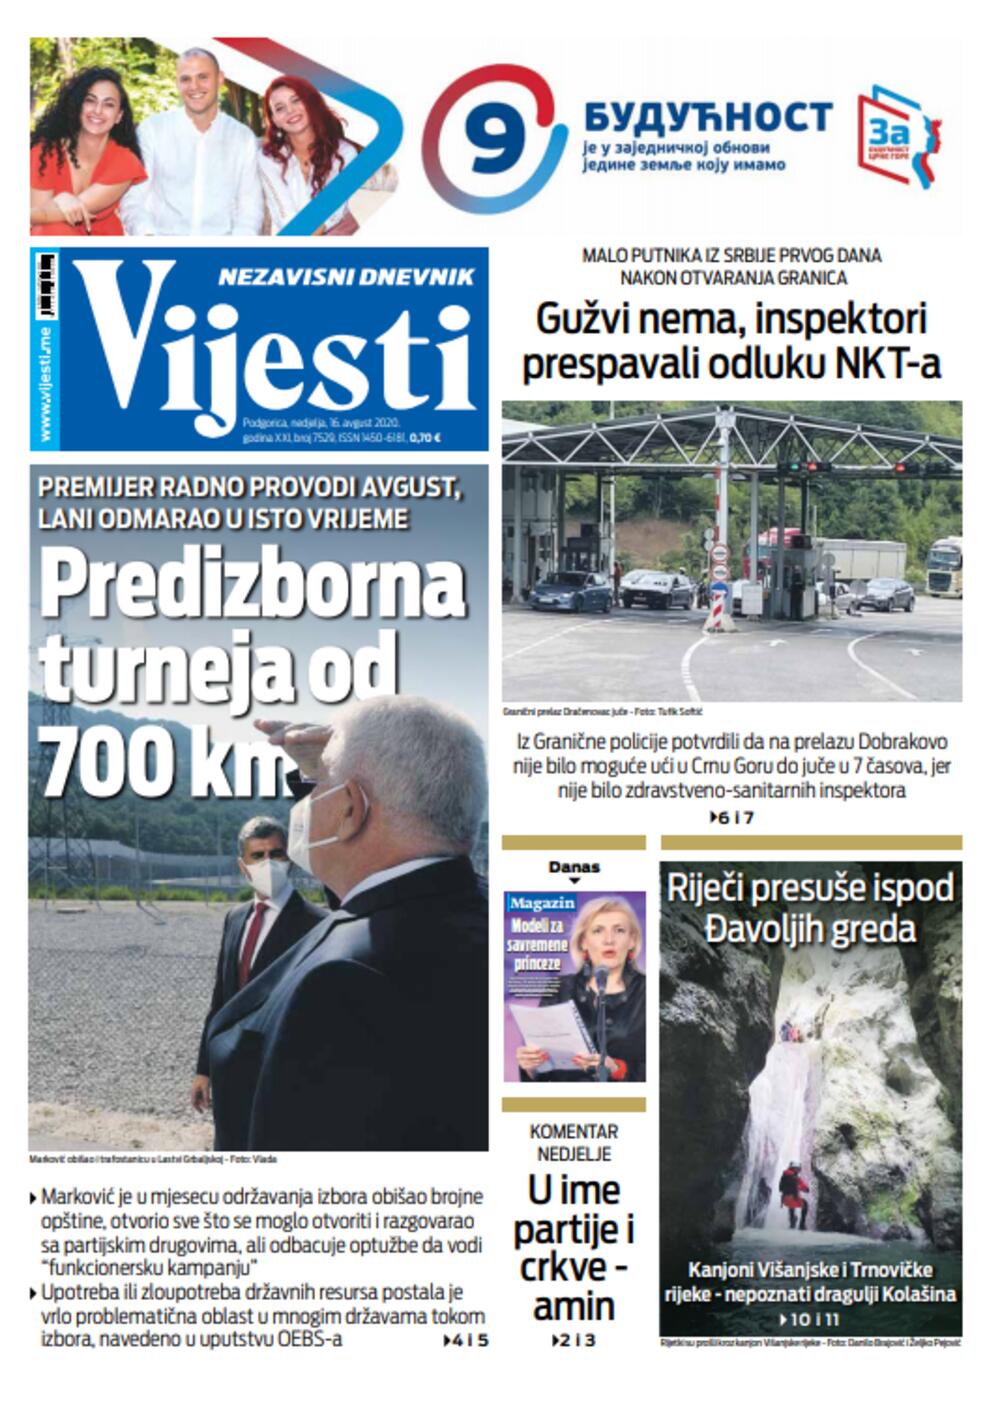 Naslovna strana "Vijesti" za 16. avgust, Foto: Vijesti